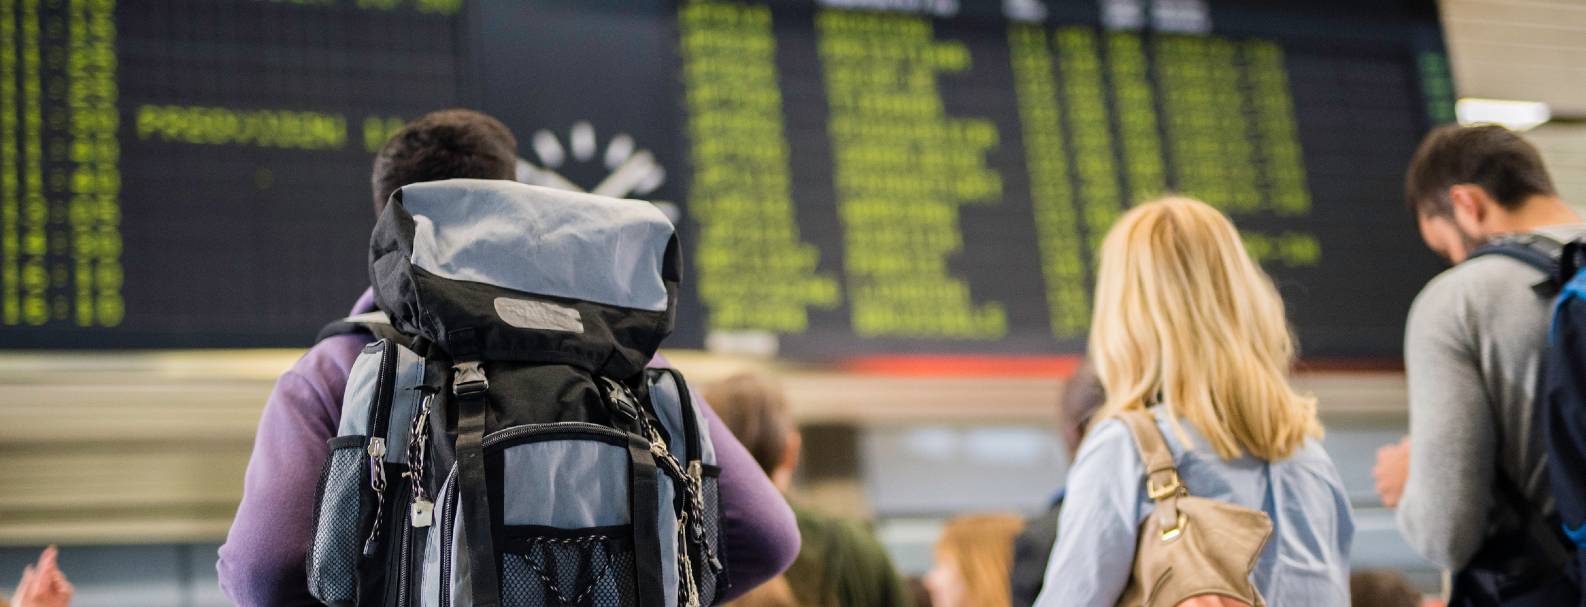 Image de voyageurs regardant le tableau montant l'état des vols à l'aéroport